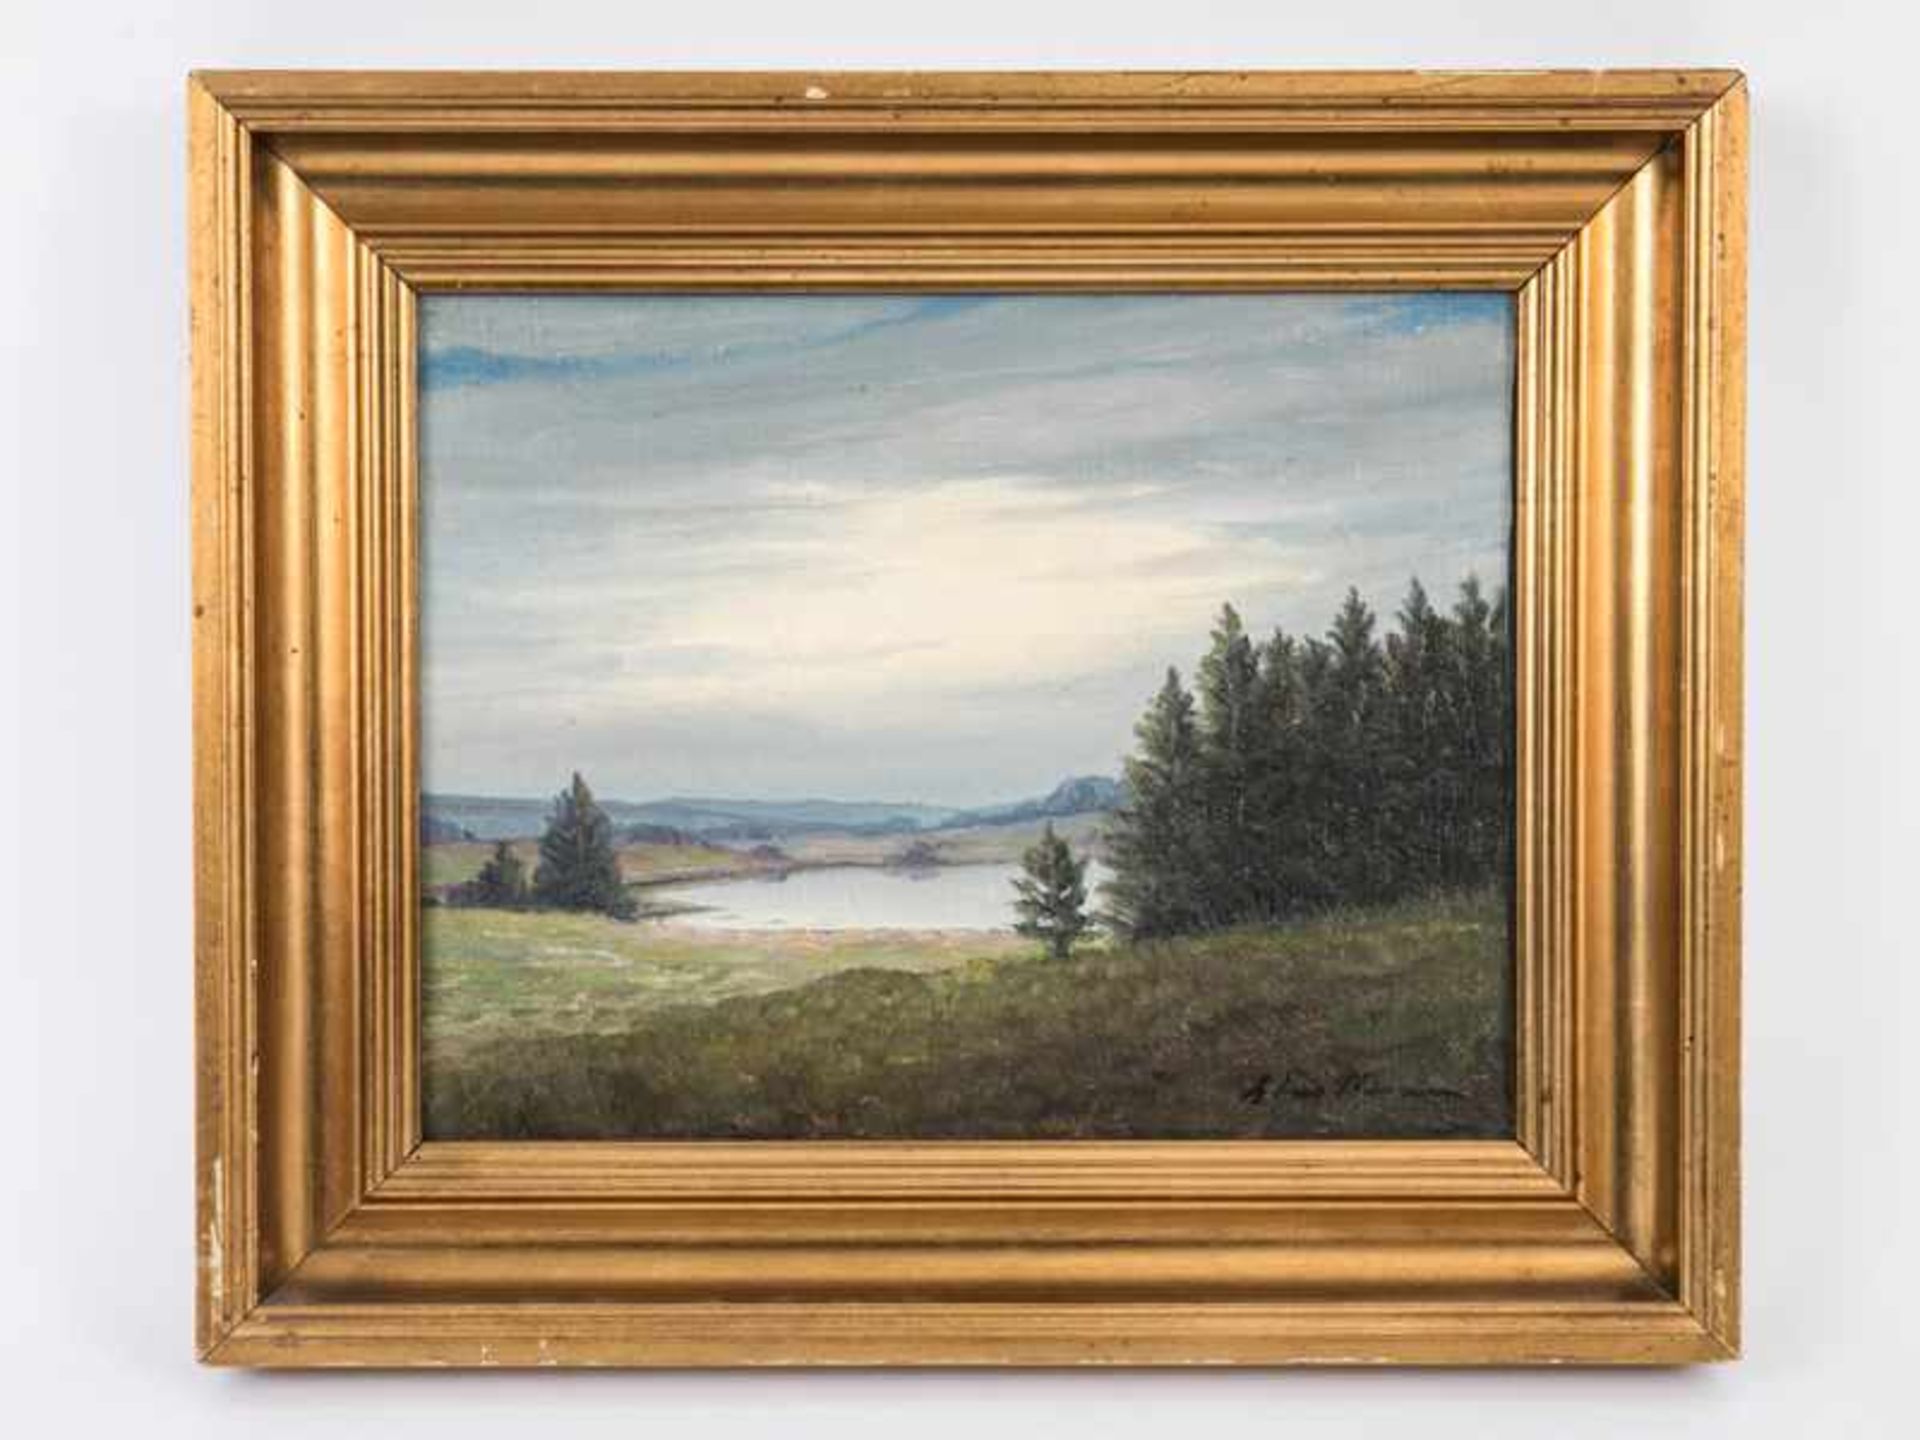 Landschaftsmaler ("Hansen"), vermutlich Dänemark, 20. Jh. Öl auf Leinwand, Weite Hügellandschaft mit